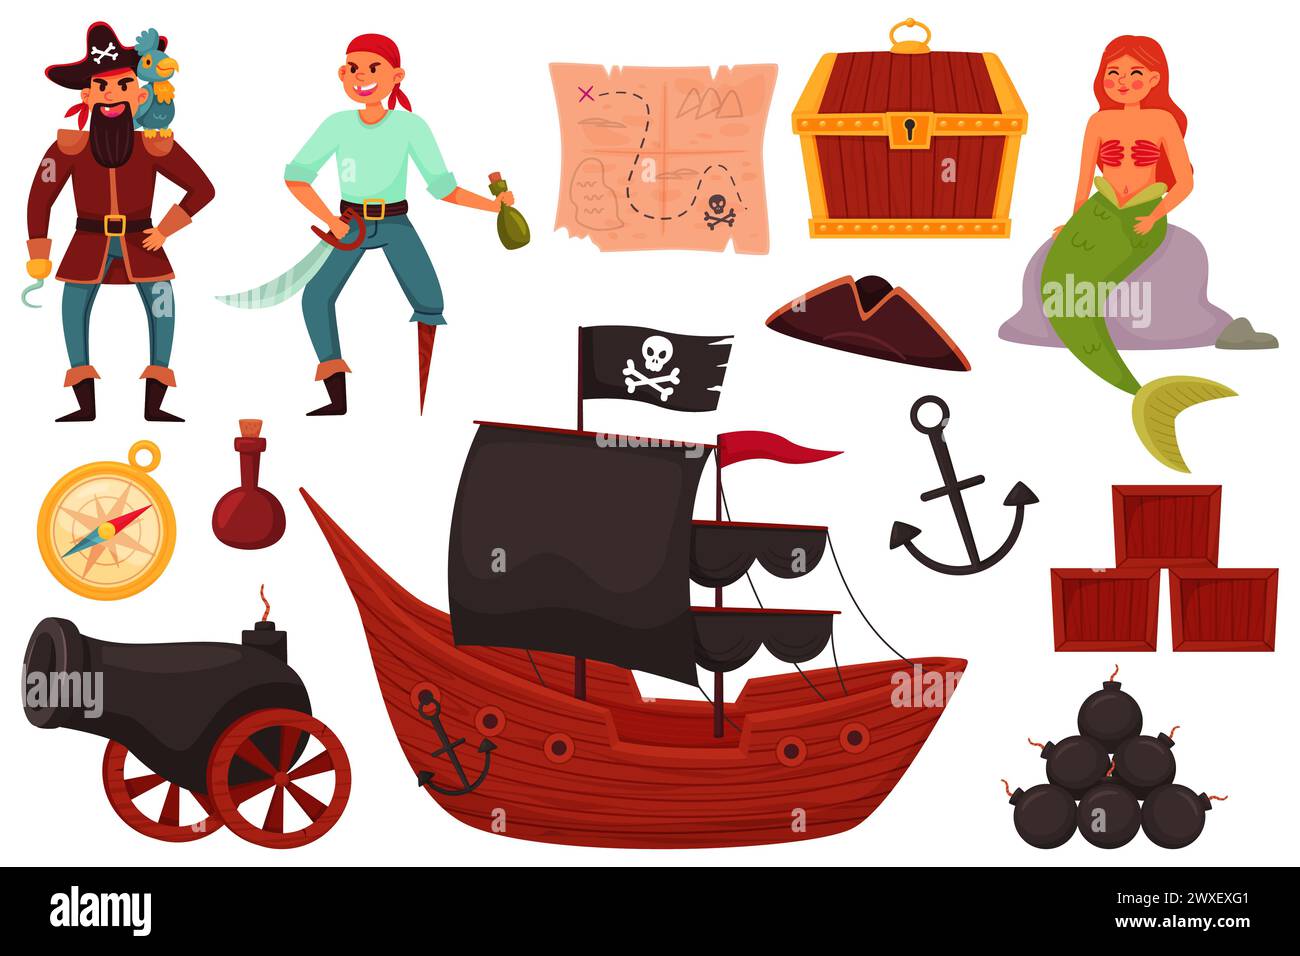 Artículos piratas. Divertido equipo marino, lindo capitán de la mano espada, marinero y sirena, barco con velas negras, elementos aislados de dibujos animados, cañón y ancla, tre Ilustración del Vector